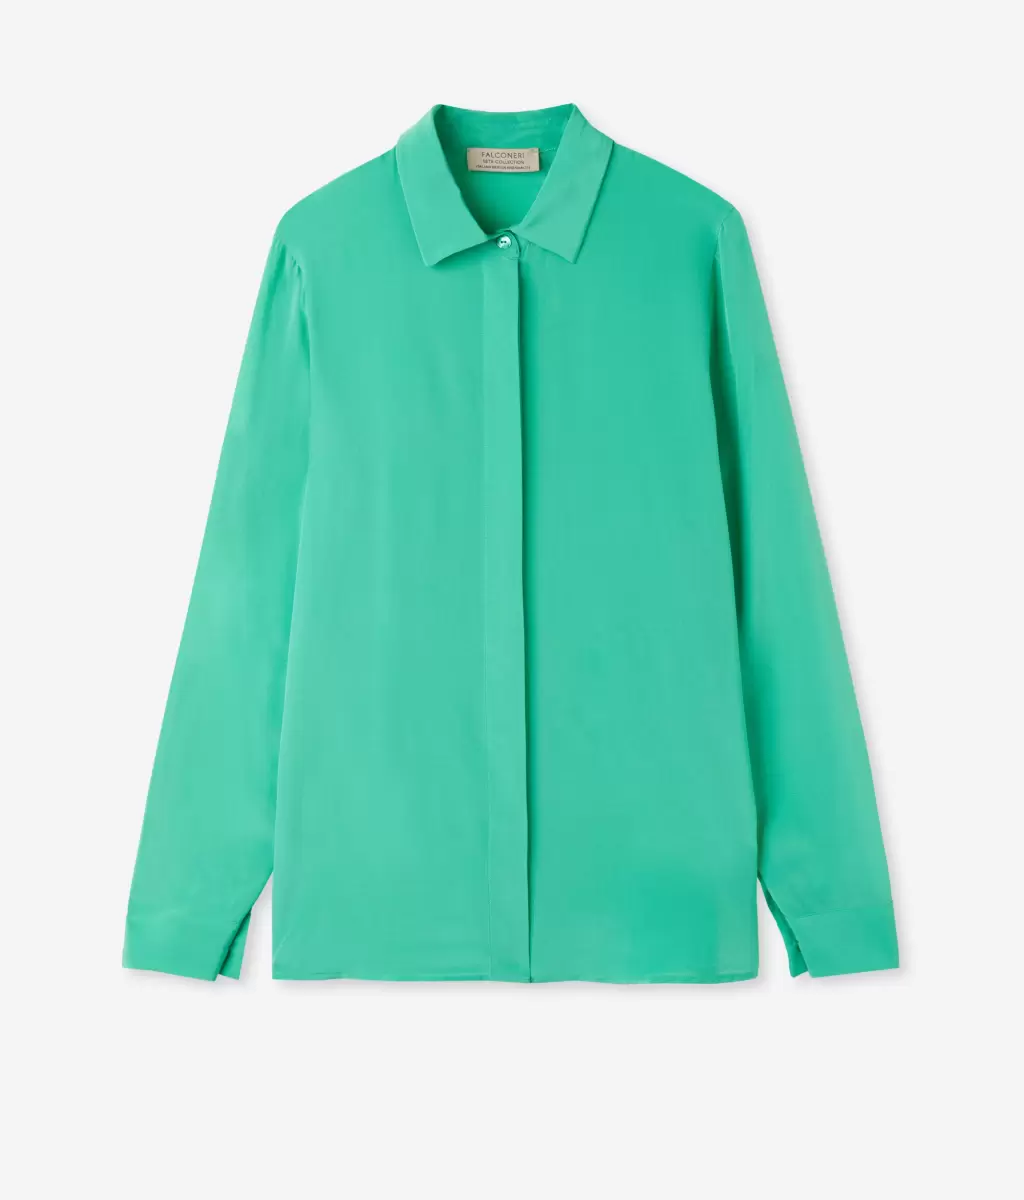 Koszule I Bluzki Kobieta Jedwabna Koszula Z Kołnierzykiem Falconeri Green - 4